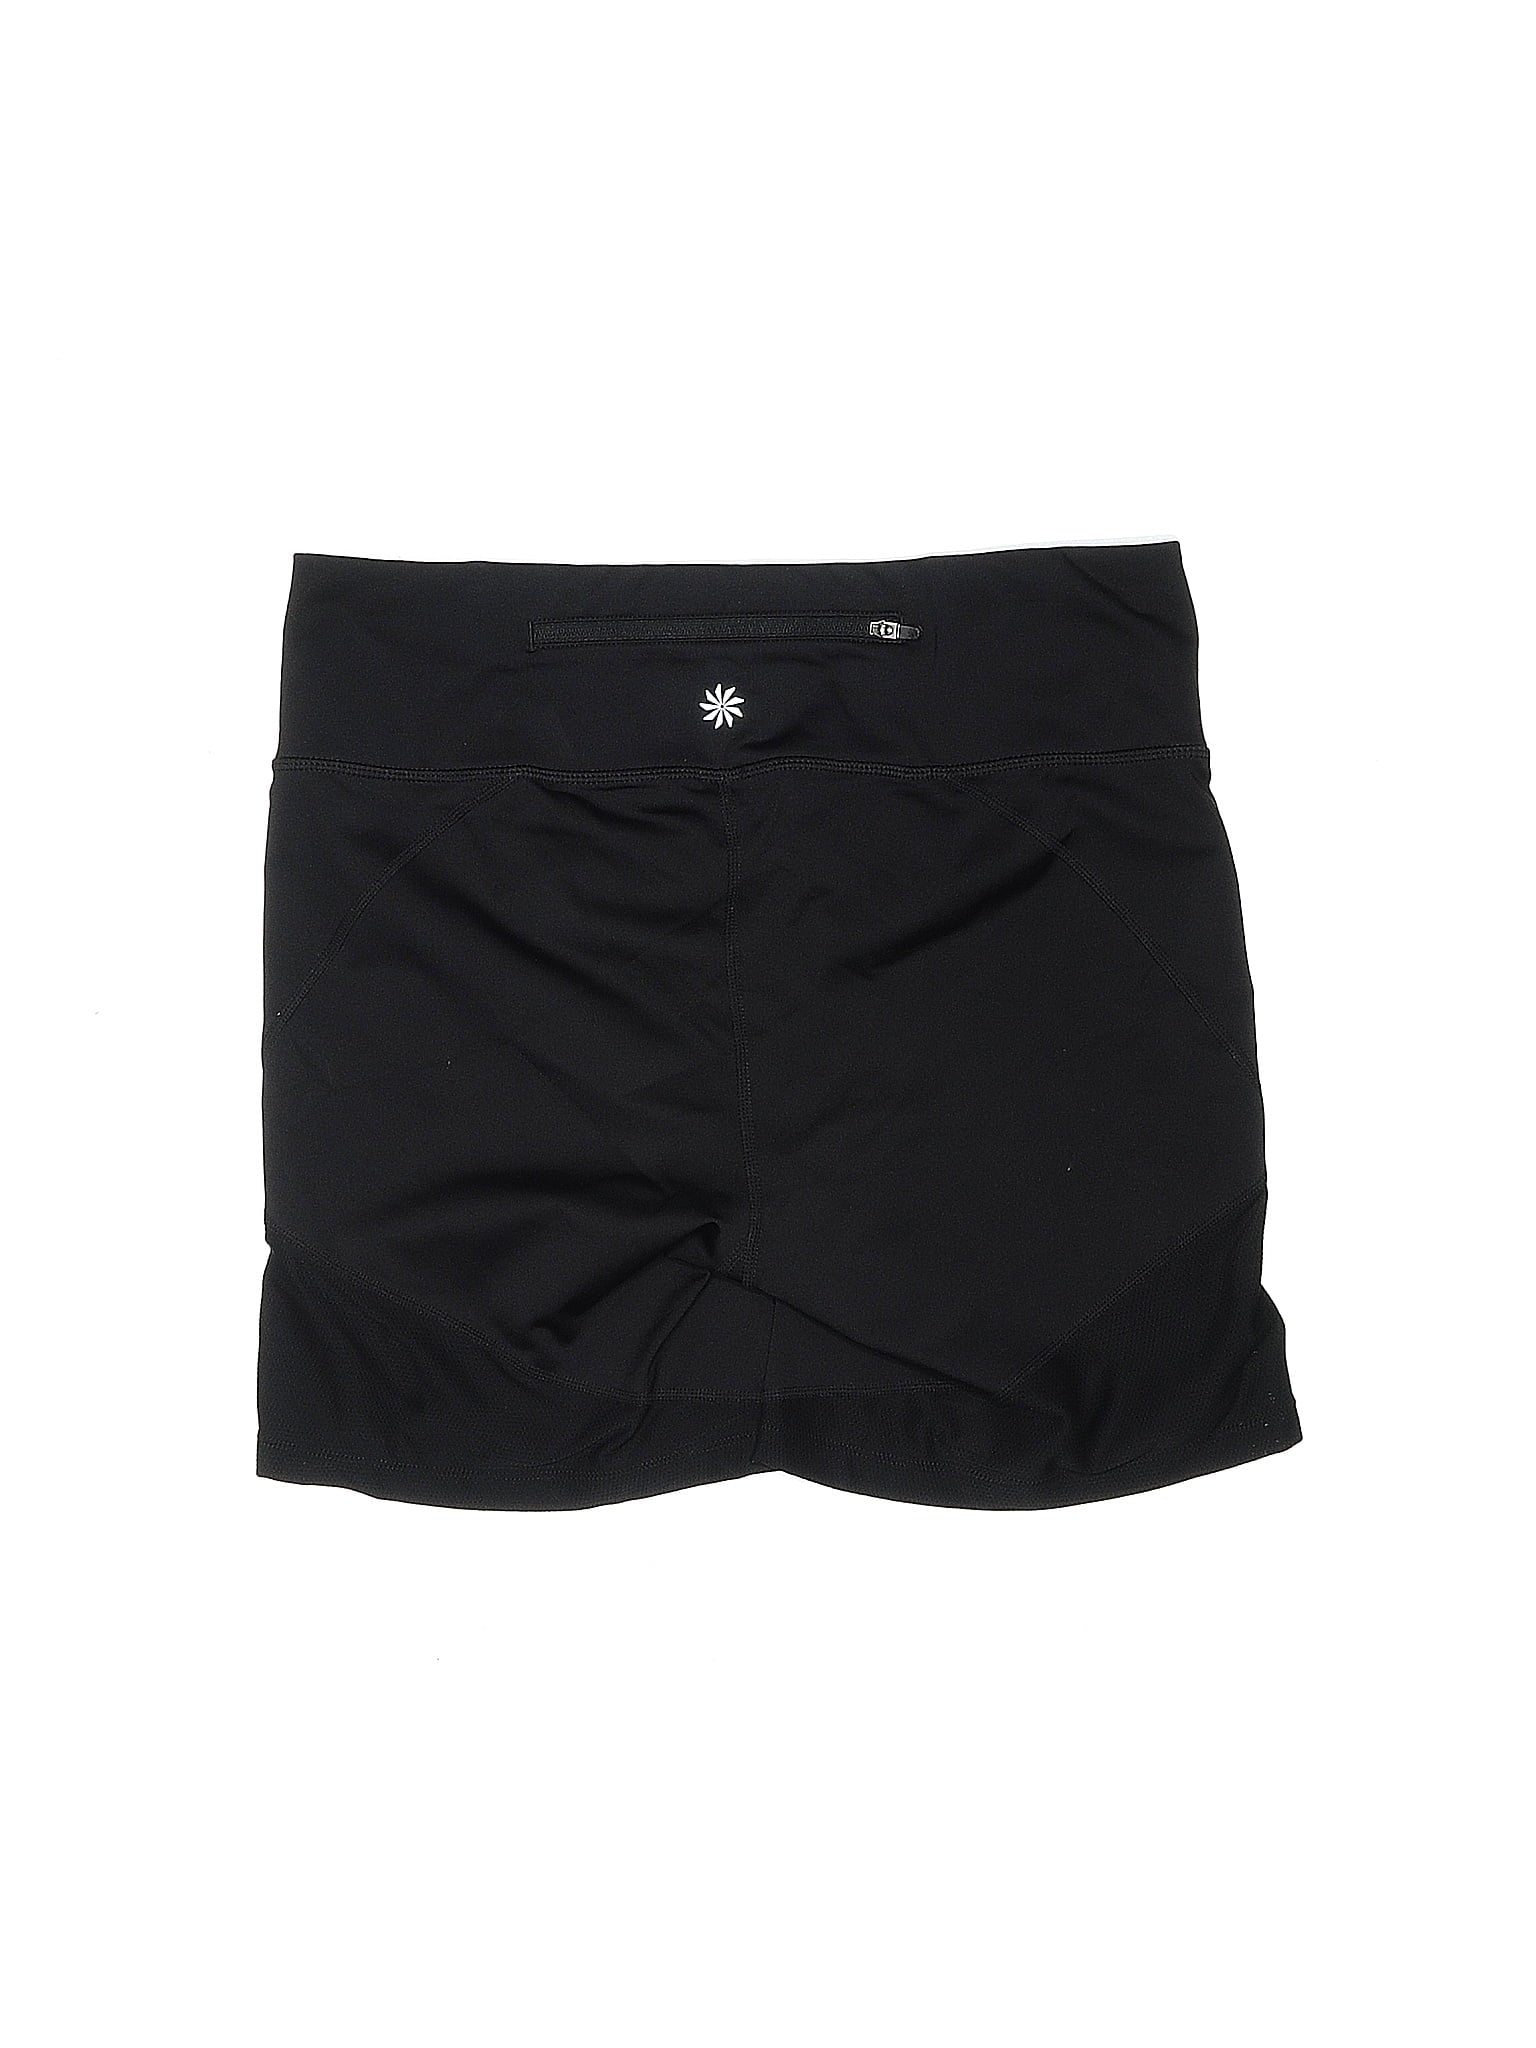 Athletic Shorts size - M